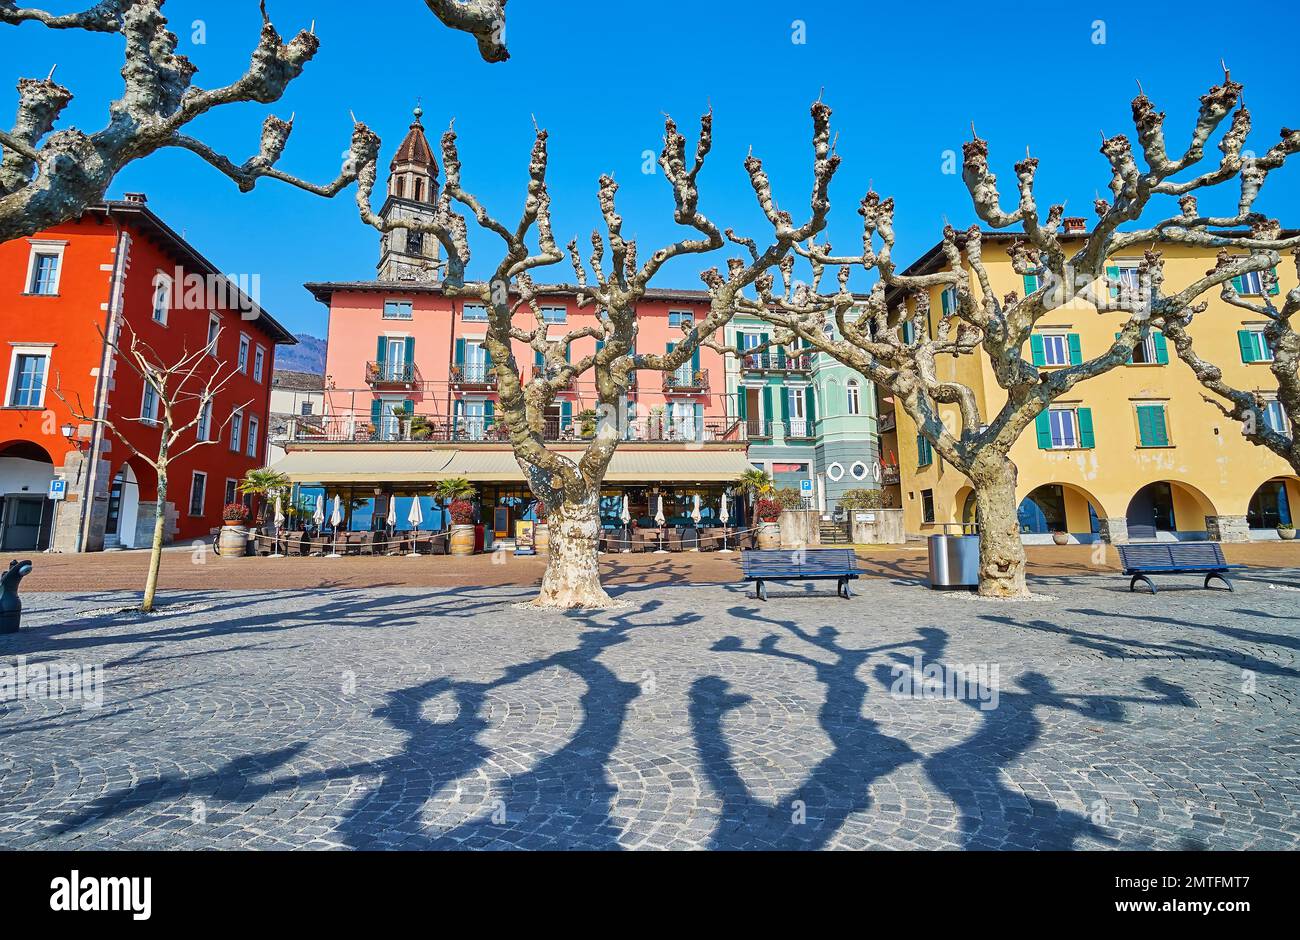 Les anciens sycomores se répandent devant les maisons historiques de Piazza Giuseppe Motta, Ascona, Suisse Banque D'Images